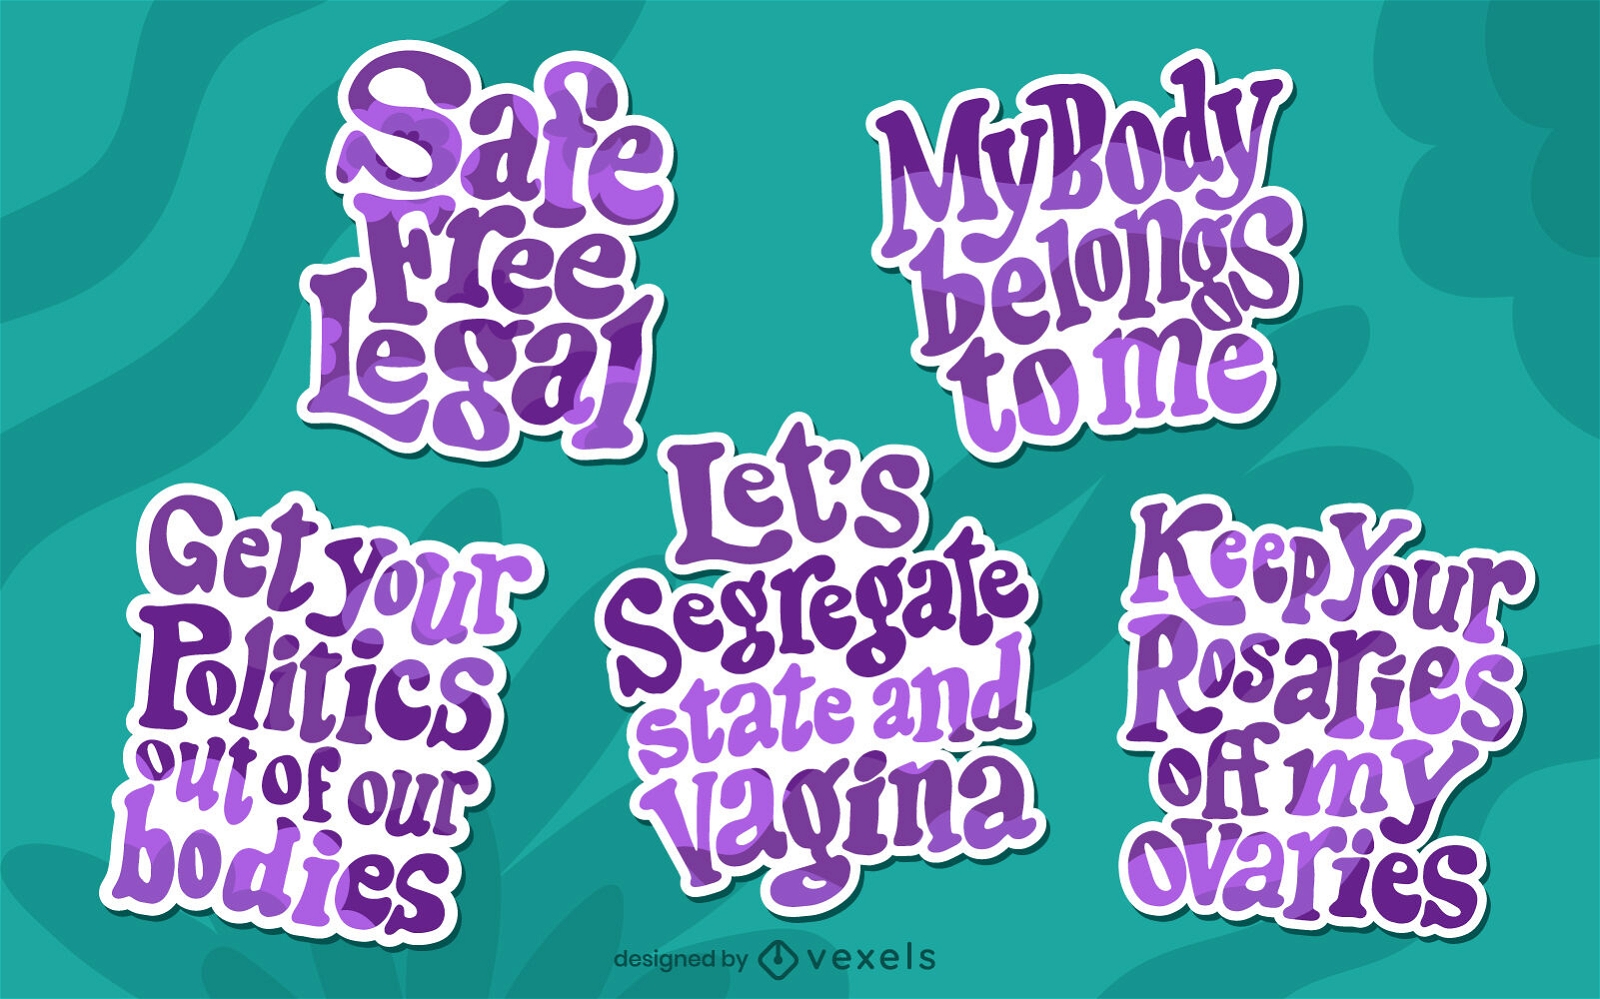 Feminist uterus lettering stickers set